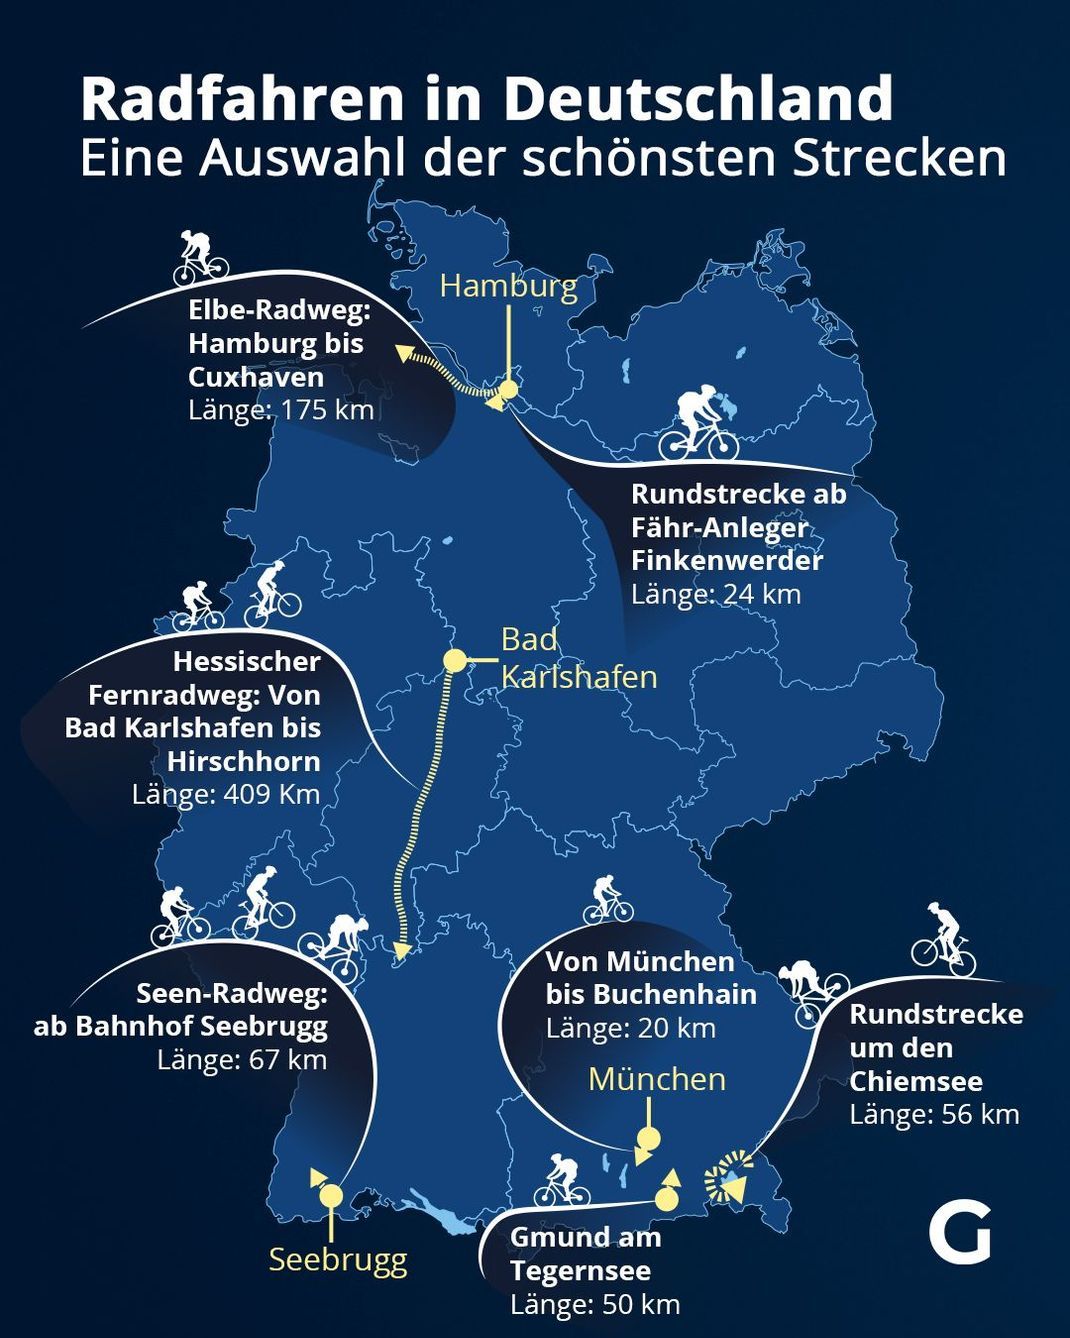 Radfahren in Deutschland - Eine Auswahl der schönsten Strecken